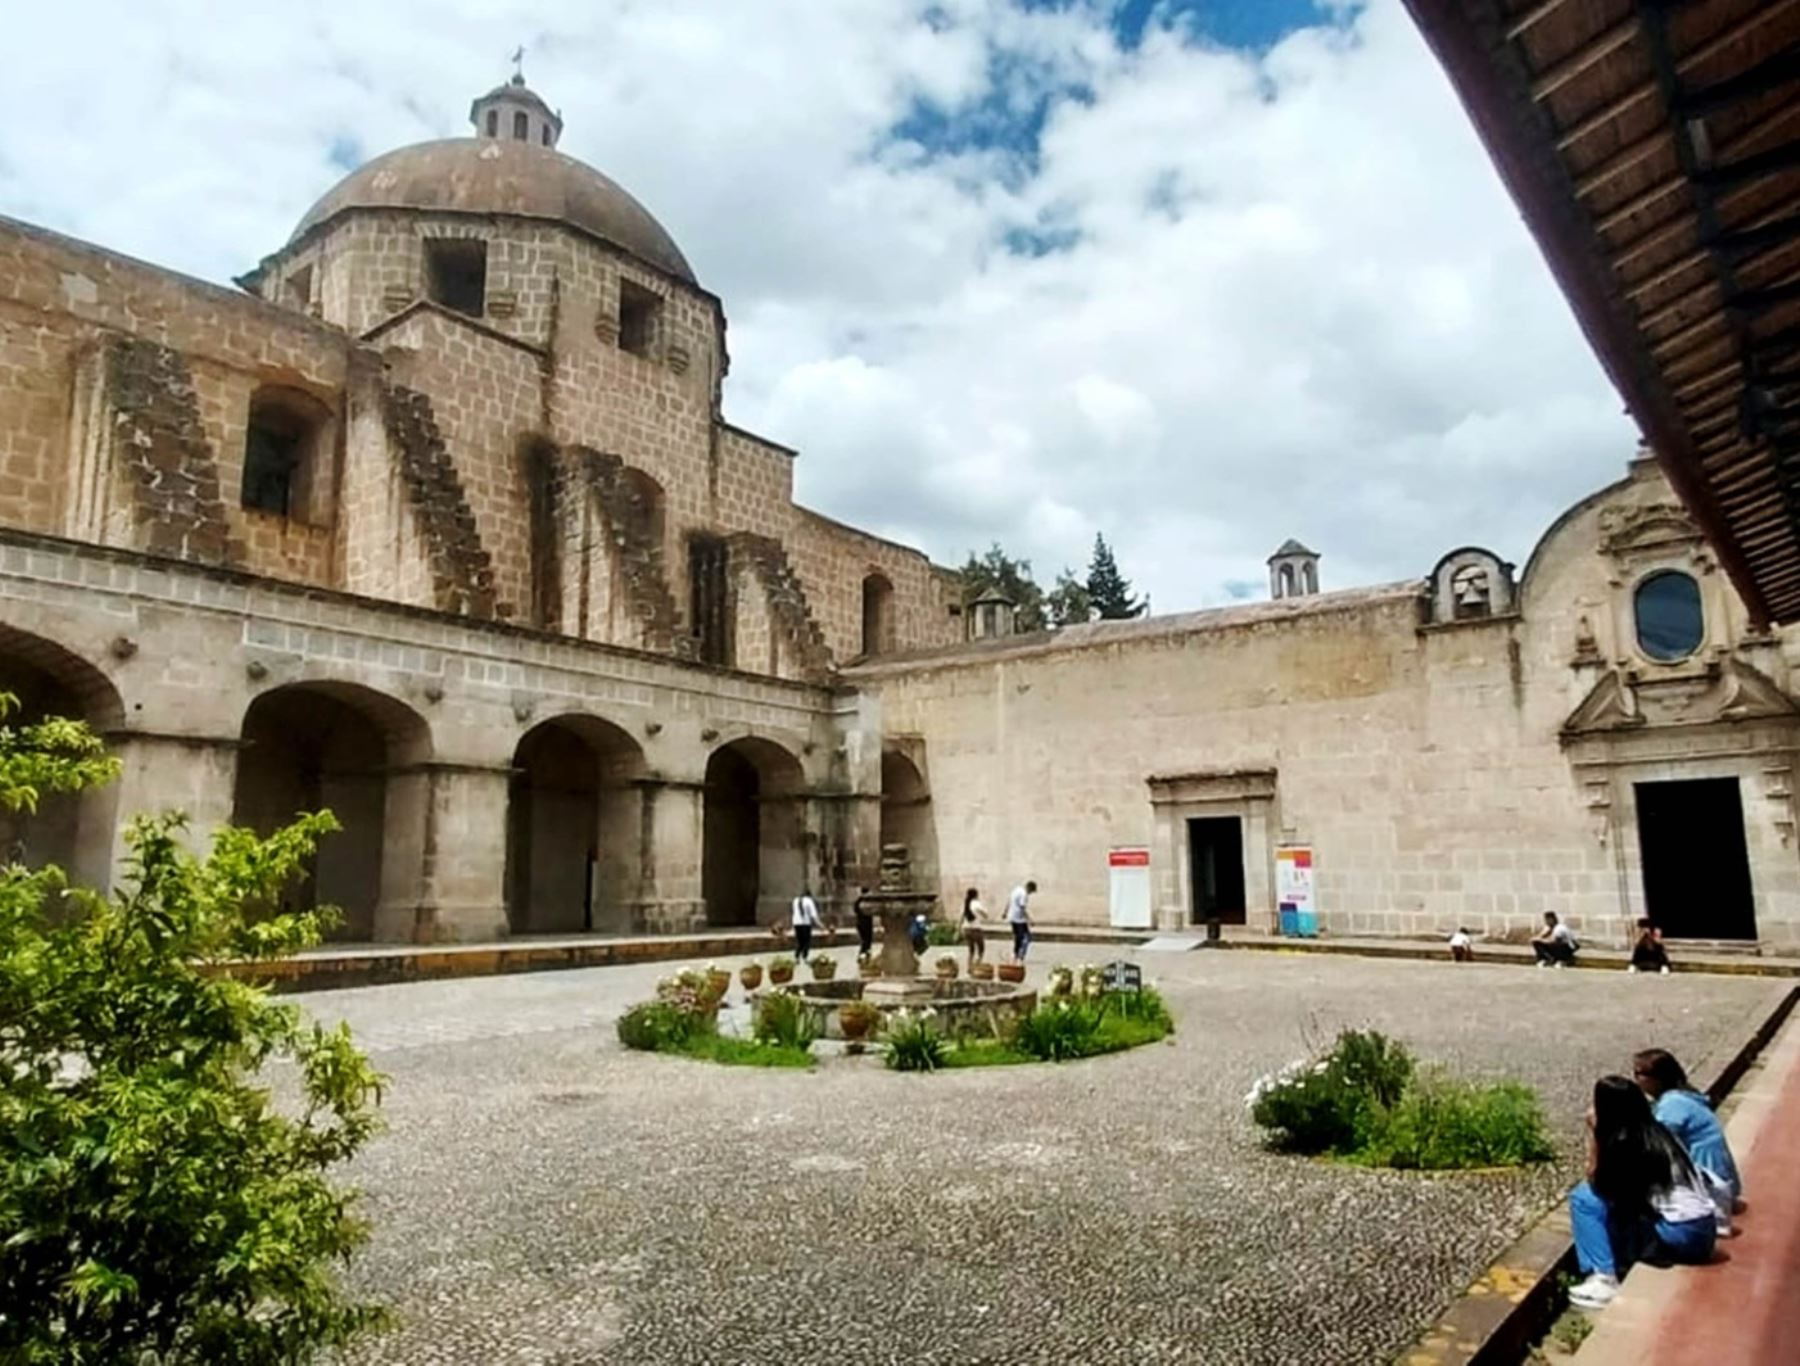 El Conjunto Monumental Belén, conformado por el Cuarto del Rescate, la iglesia Belén y el museo etnográfico, es el lugar más visitado de Cajamarca gracias al programa Museos Abiertos. Luego se ubica Cumbemayo. ANDINA/Difusión